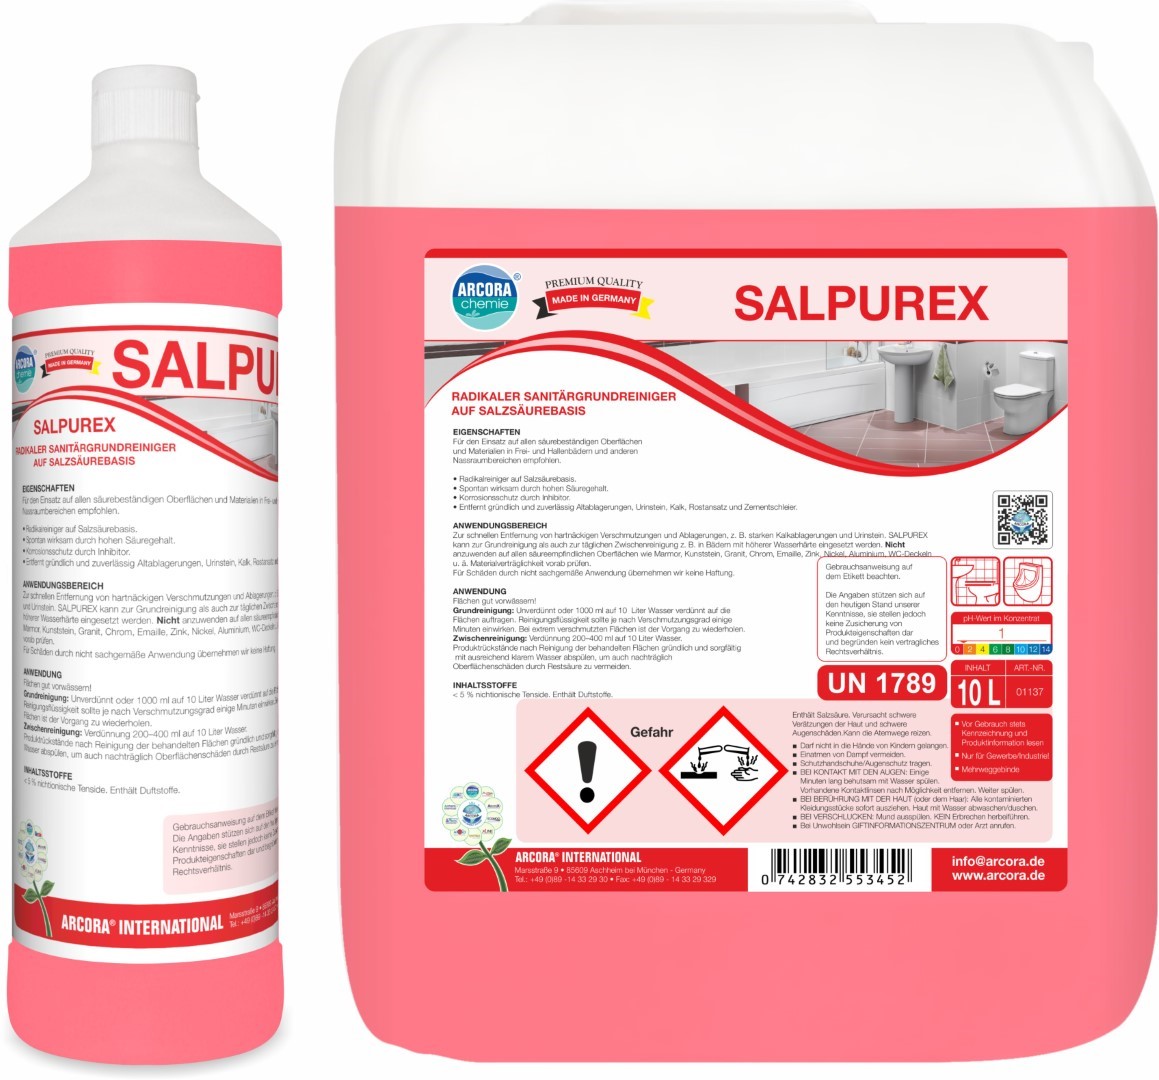 Salpurex | Sanitärgrundreiniger | Salzsäurebasis | 1 Liter Flasche